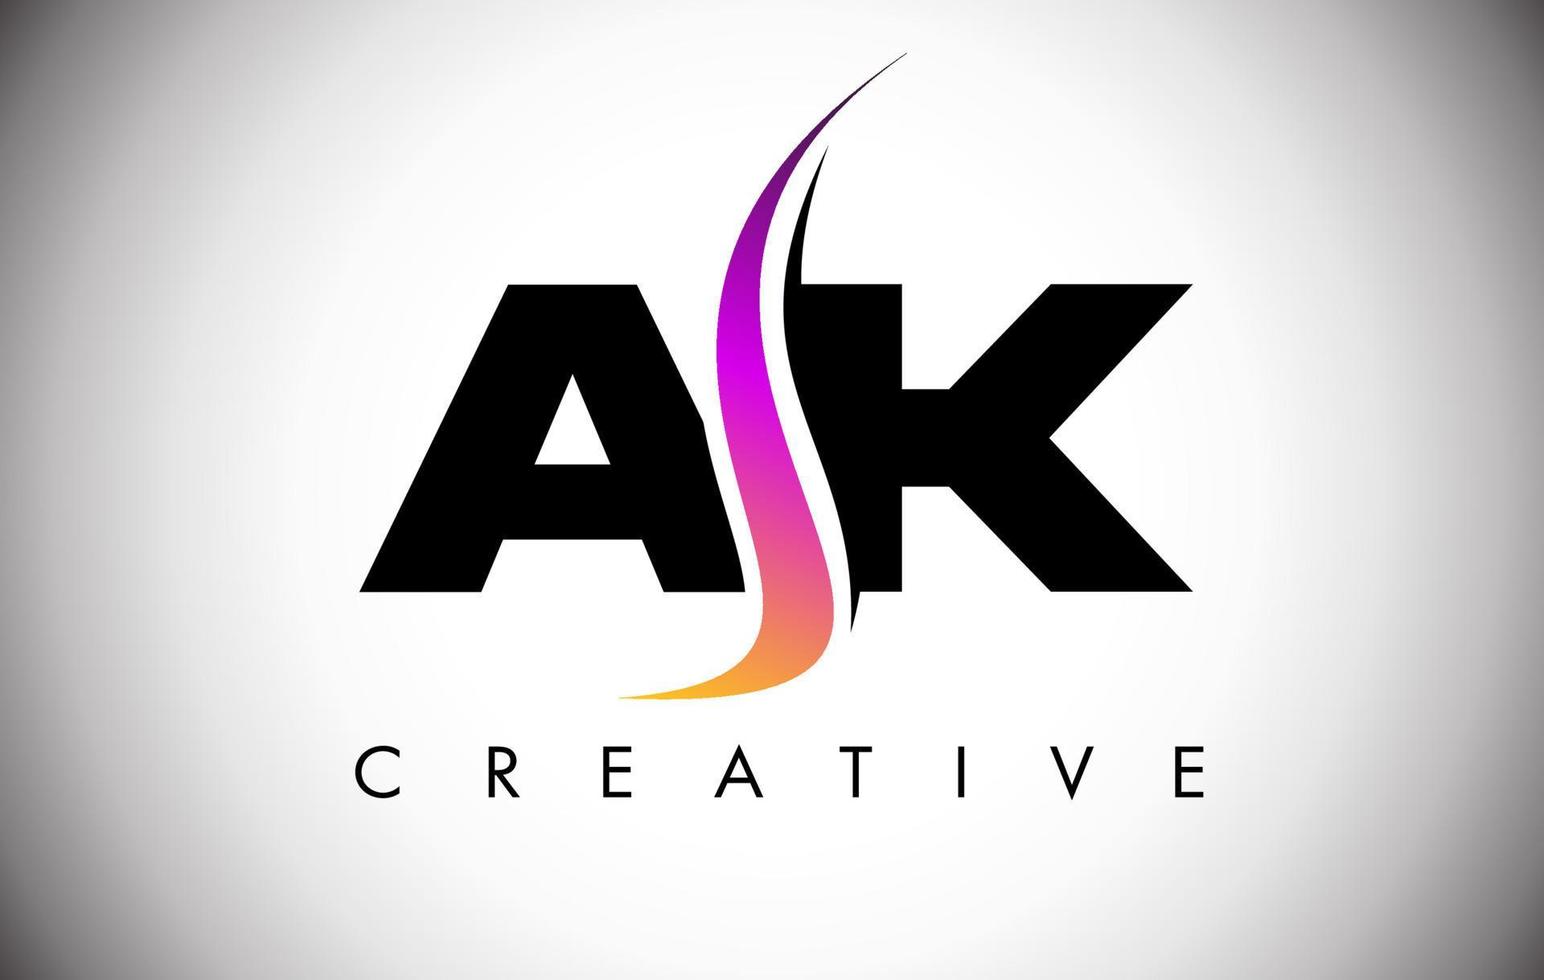 création de logo de lettre ak avec shoosh créatif et look moderne vecteur